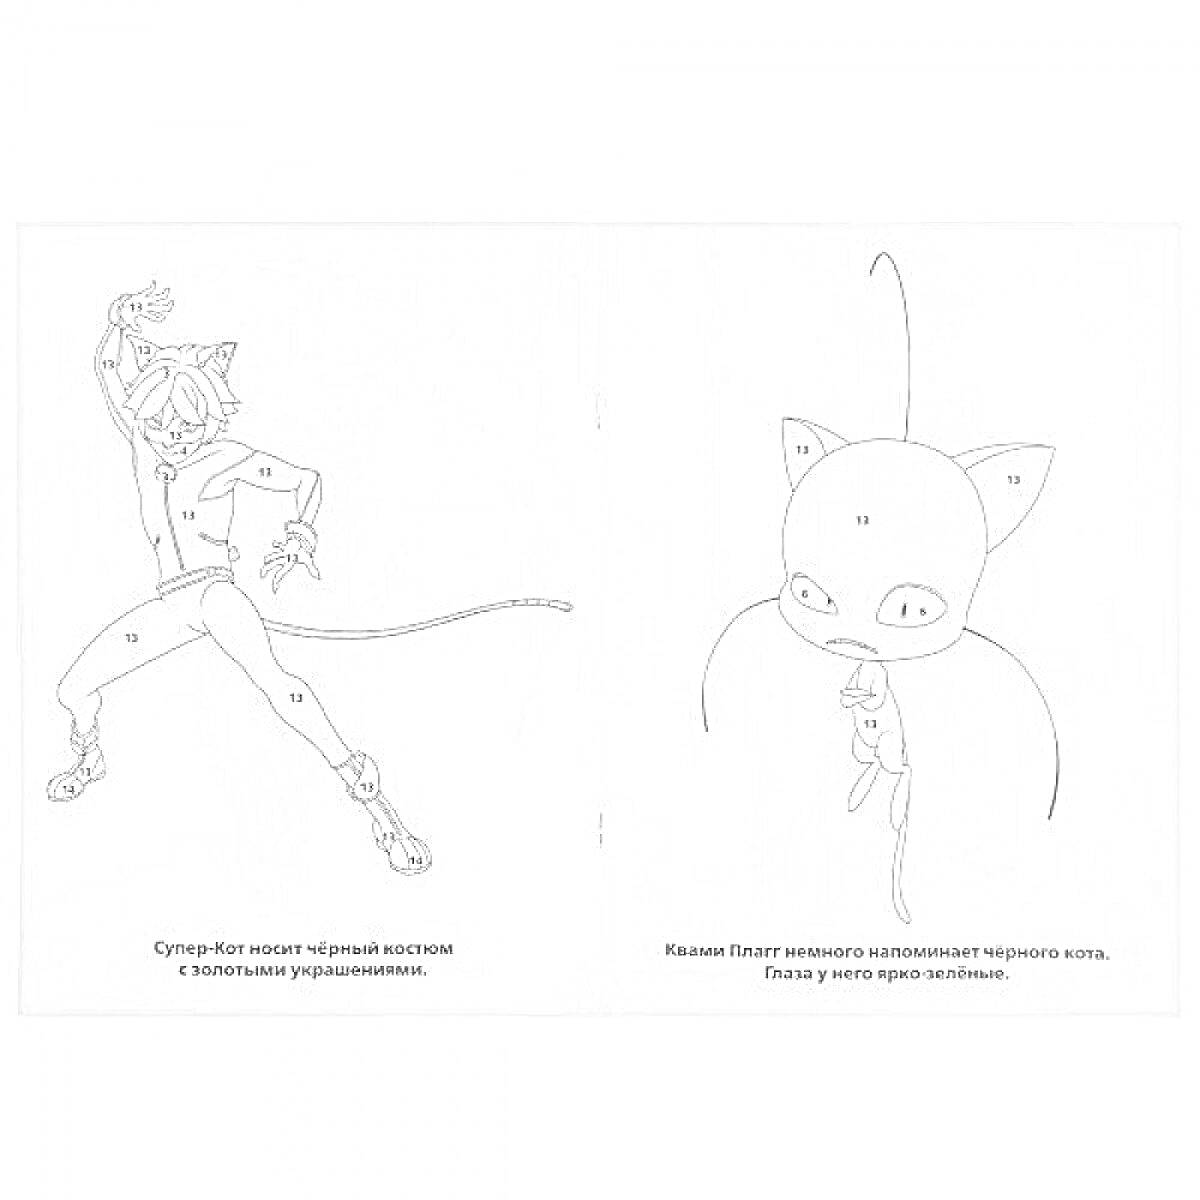 Раскраска Супер-Кот в боевой позе с котячими ушками и хвостом, а также Плагг, левитирующий рядом с Супер-Котом, с большими глазами и ушами